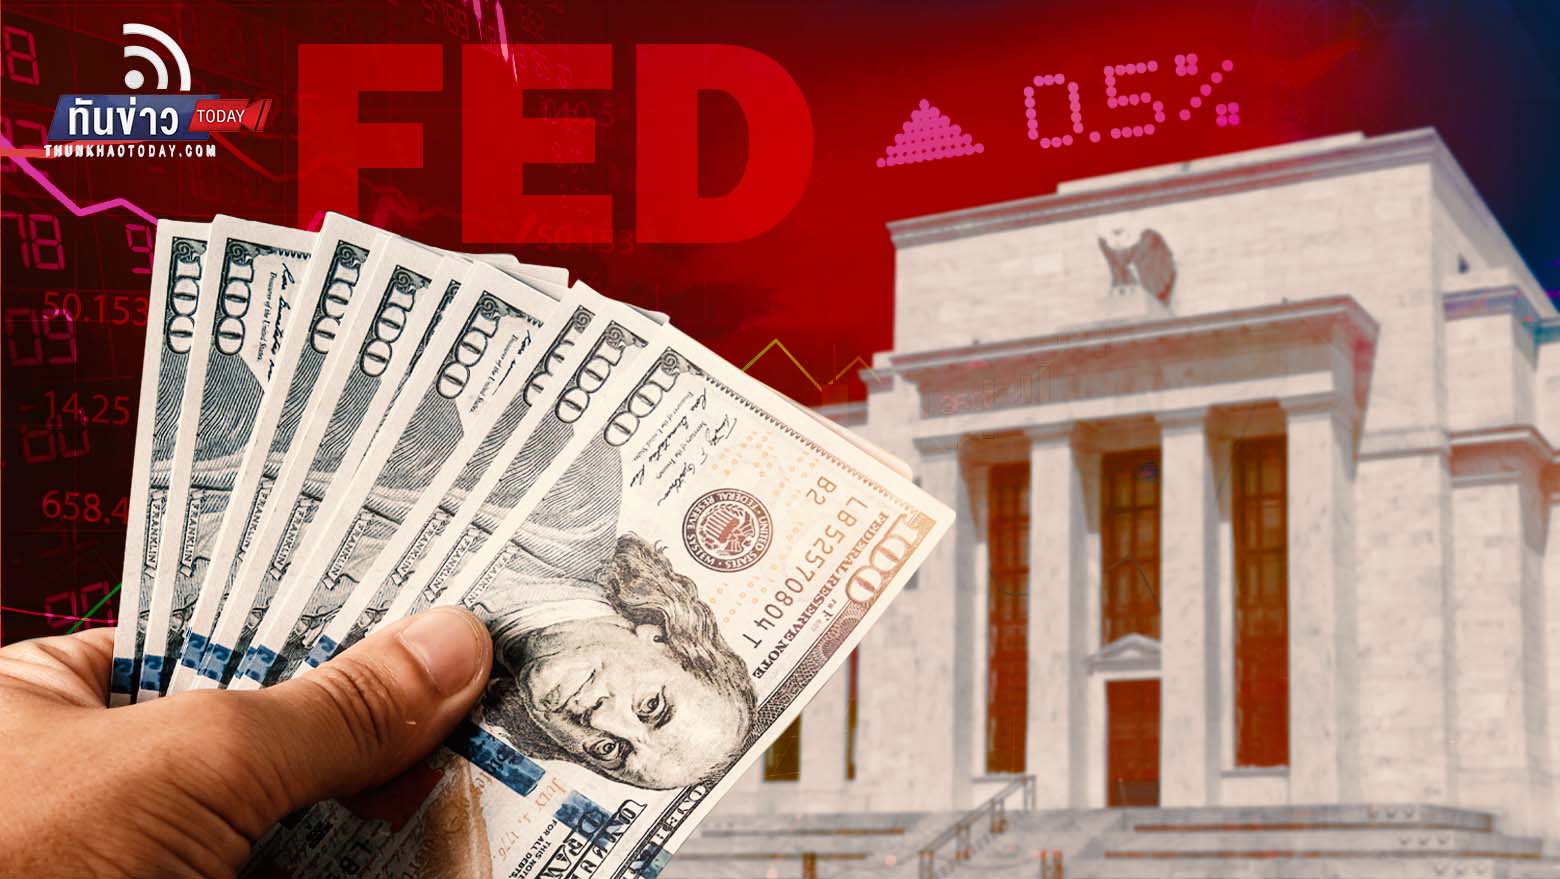 “ตลาดคาด Fed ขึ้นดอกเบี้ย 0.5% กลางเดือนนี้ กดดัน “หุ้น-ทองคำ” ร่วงต่อ